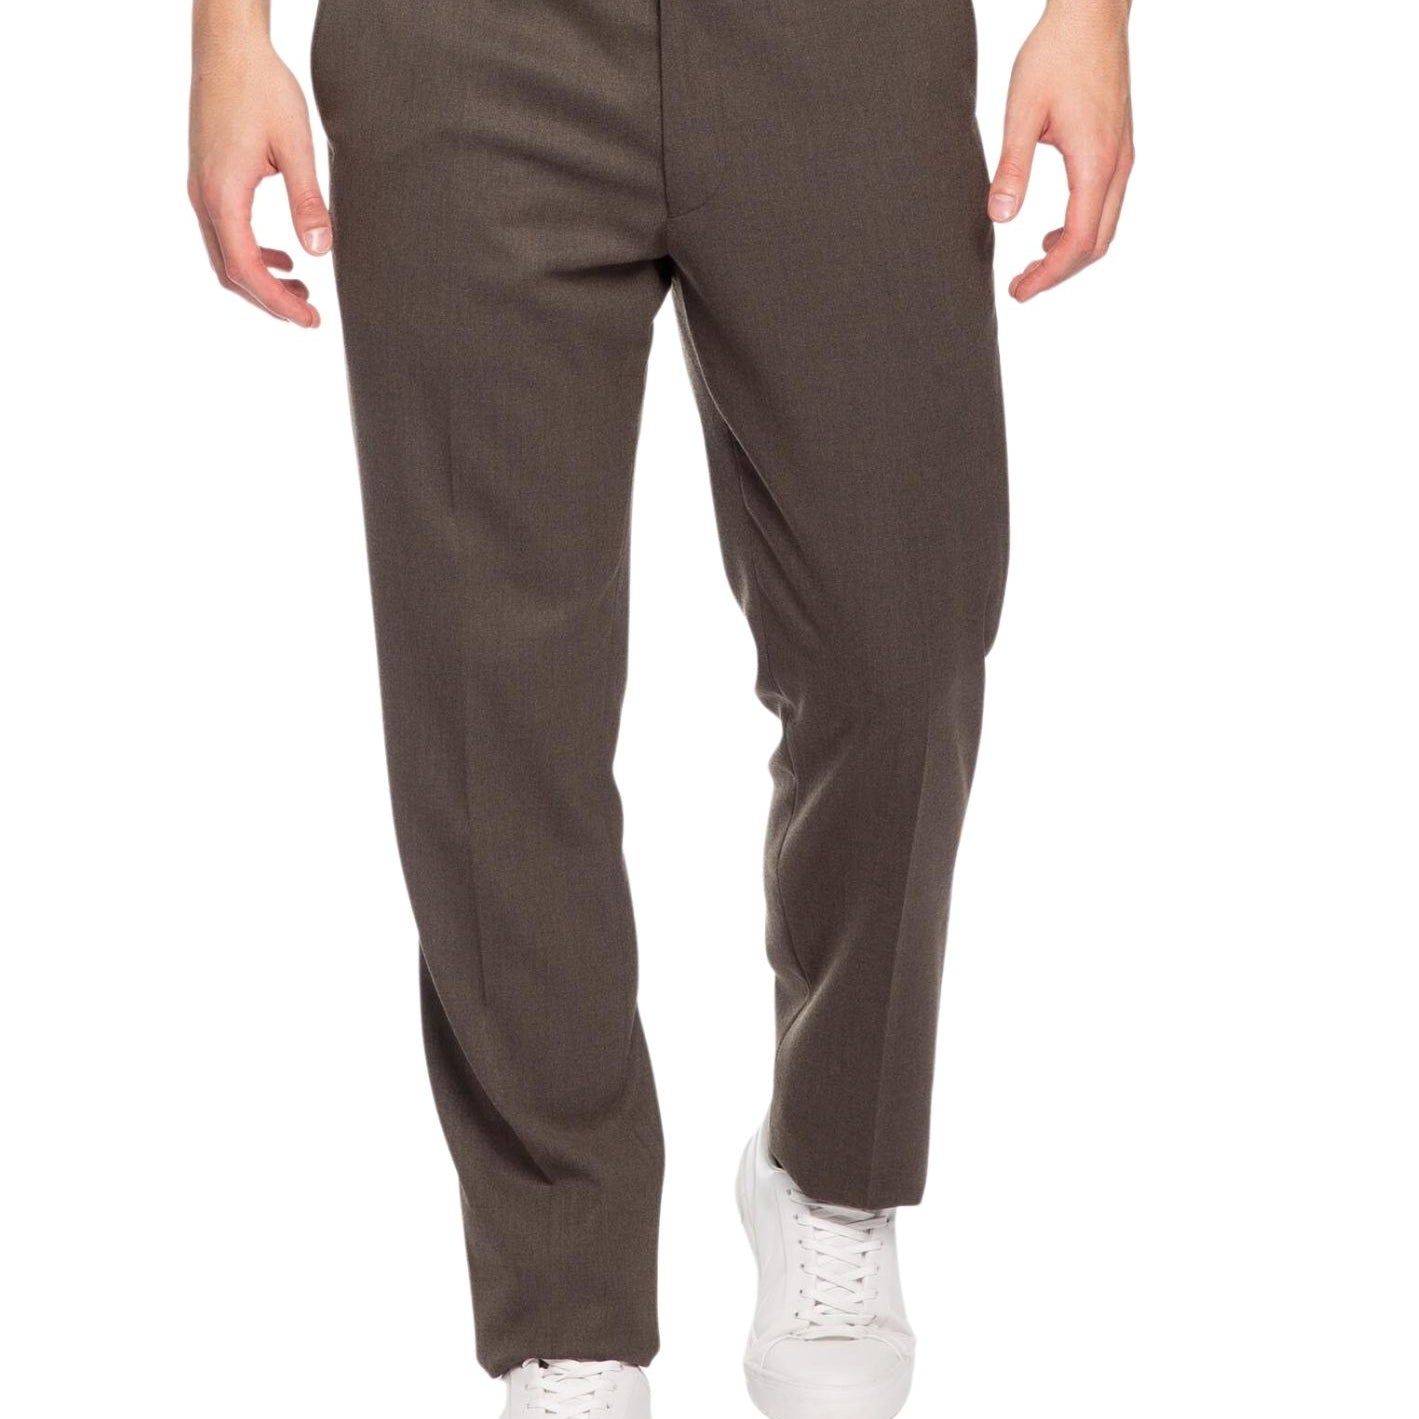 Pantalone Classico Chino con elastico interno in vita MEYER 333 OSLO